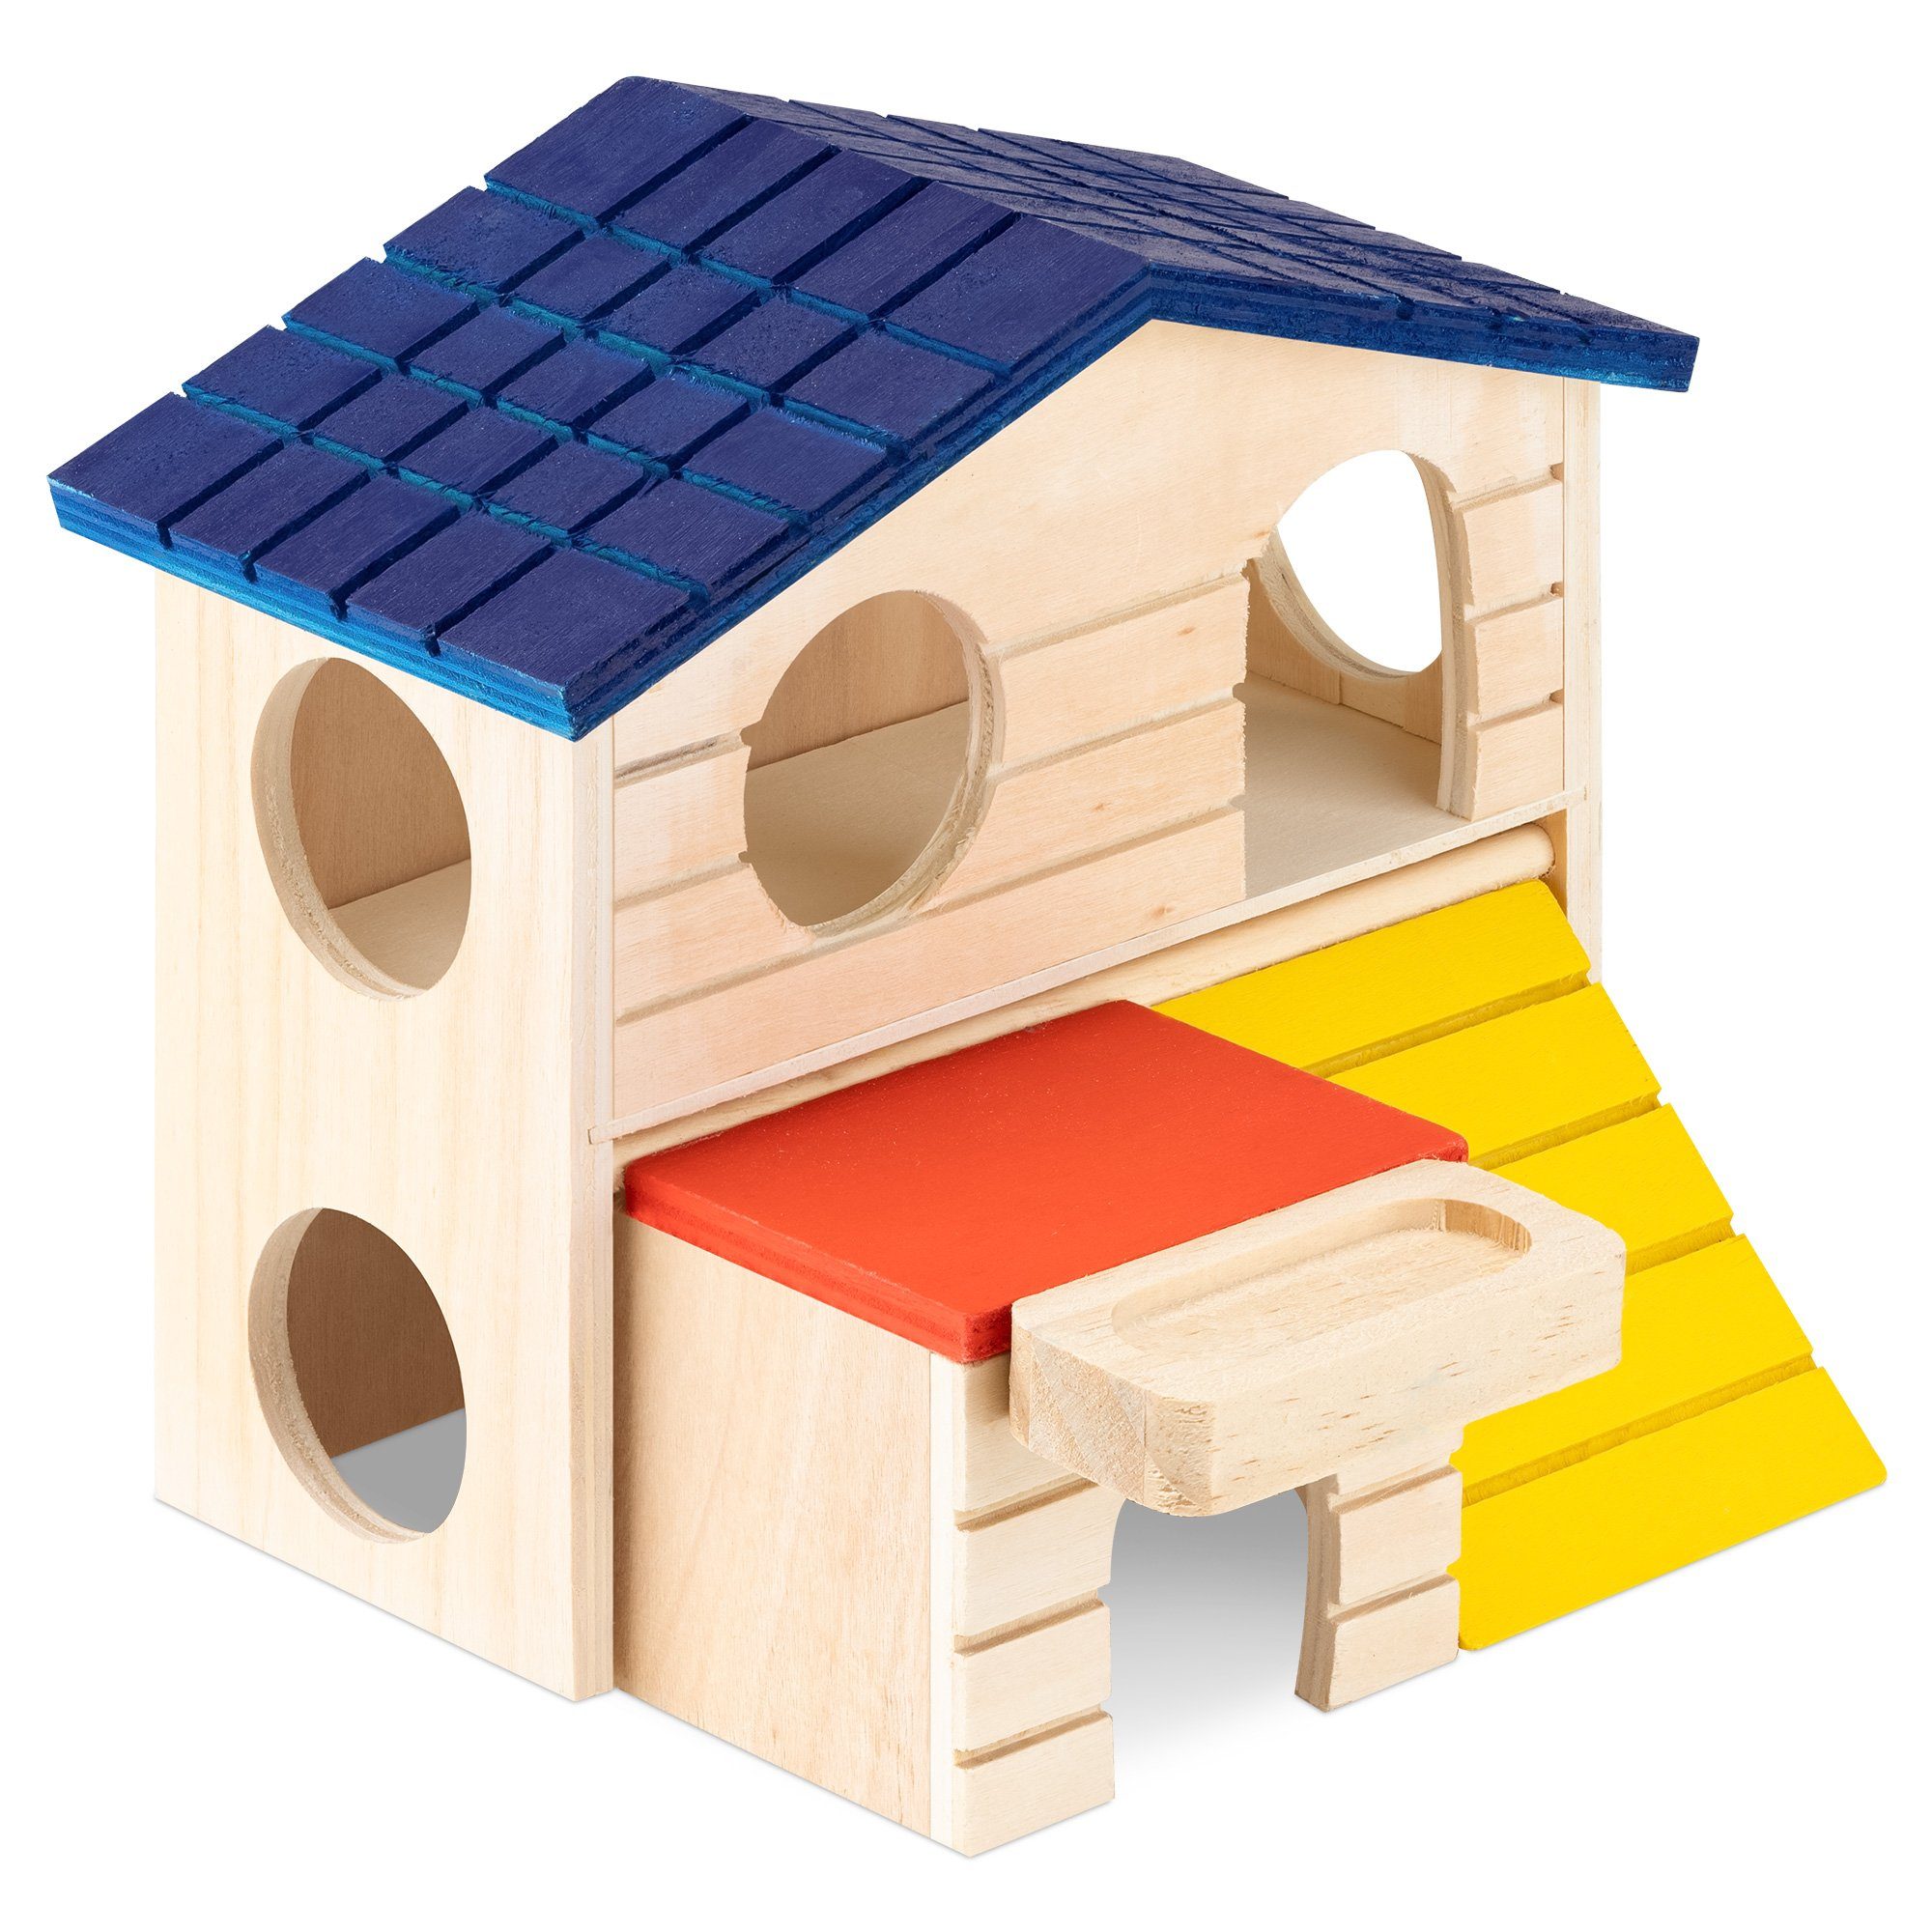 Navaris Kleintierhaus Hamster Haus aus Holz bunt - 2 Etagen Spielhaus - Nager Häuschen